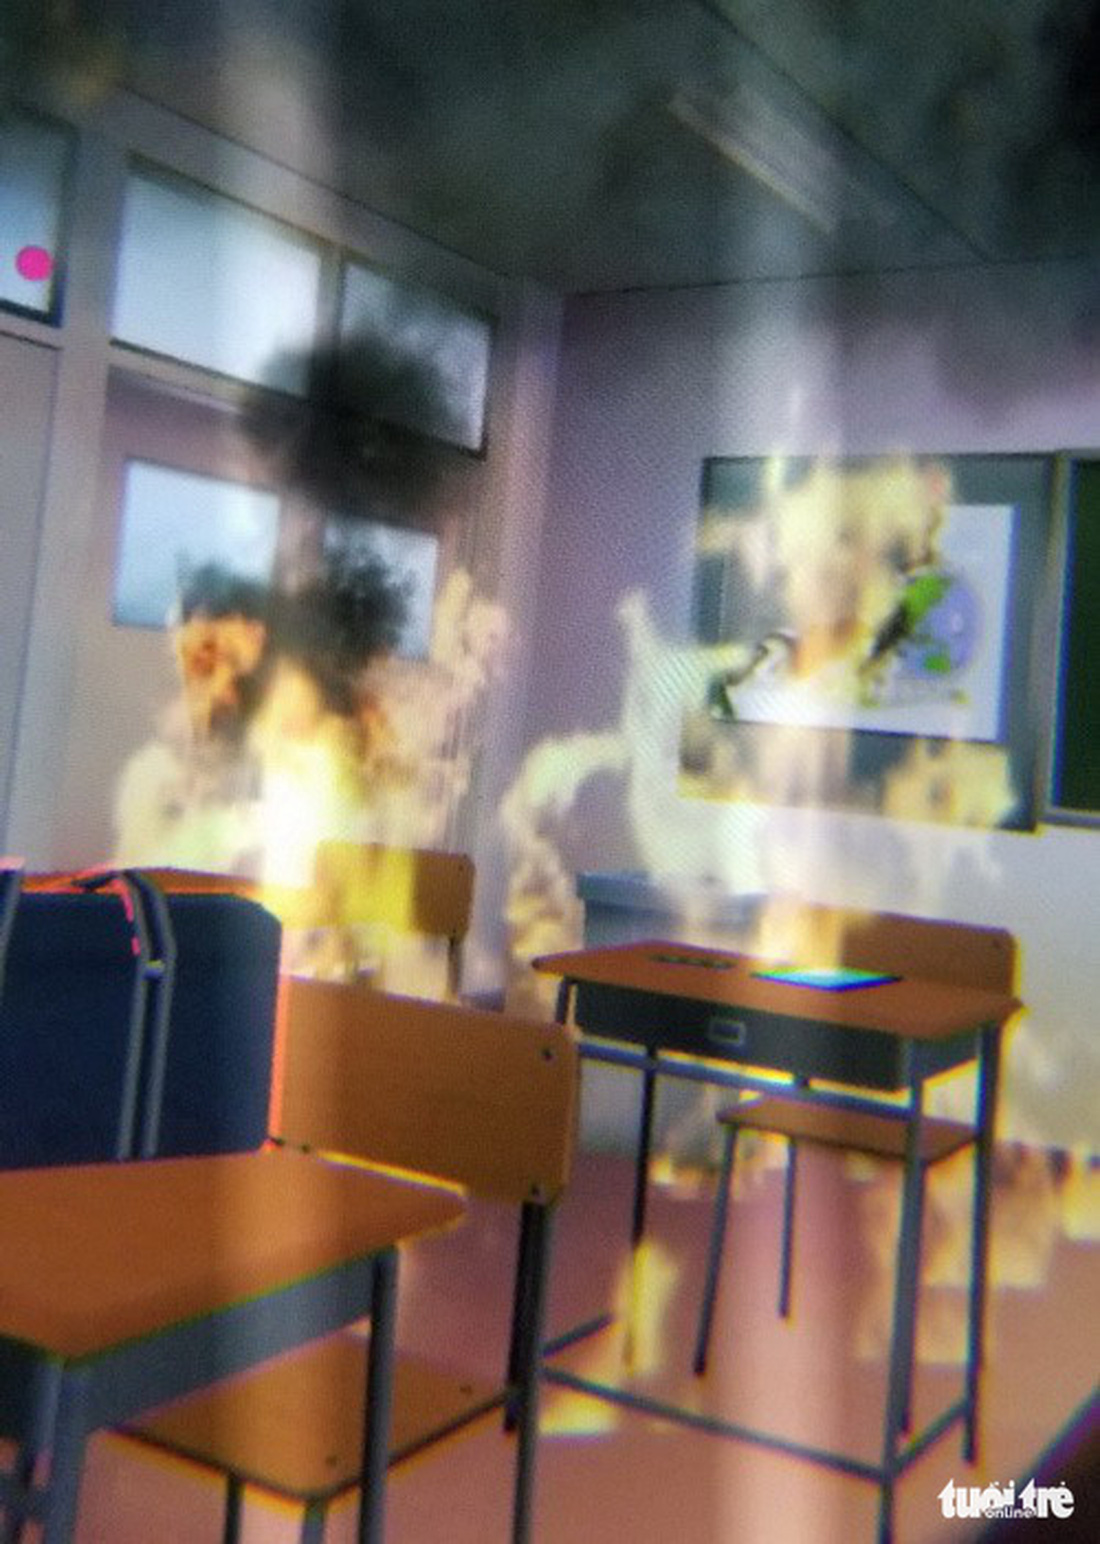 Học sinh học cách thoát hiểm trong phòng thực tế ảo - Ảnh 6.